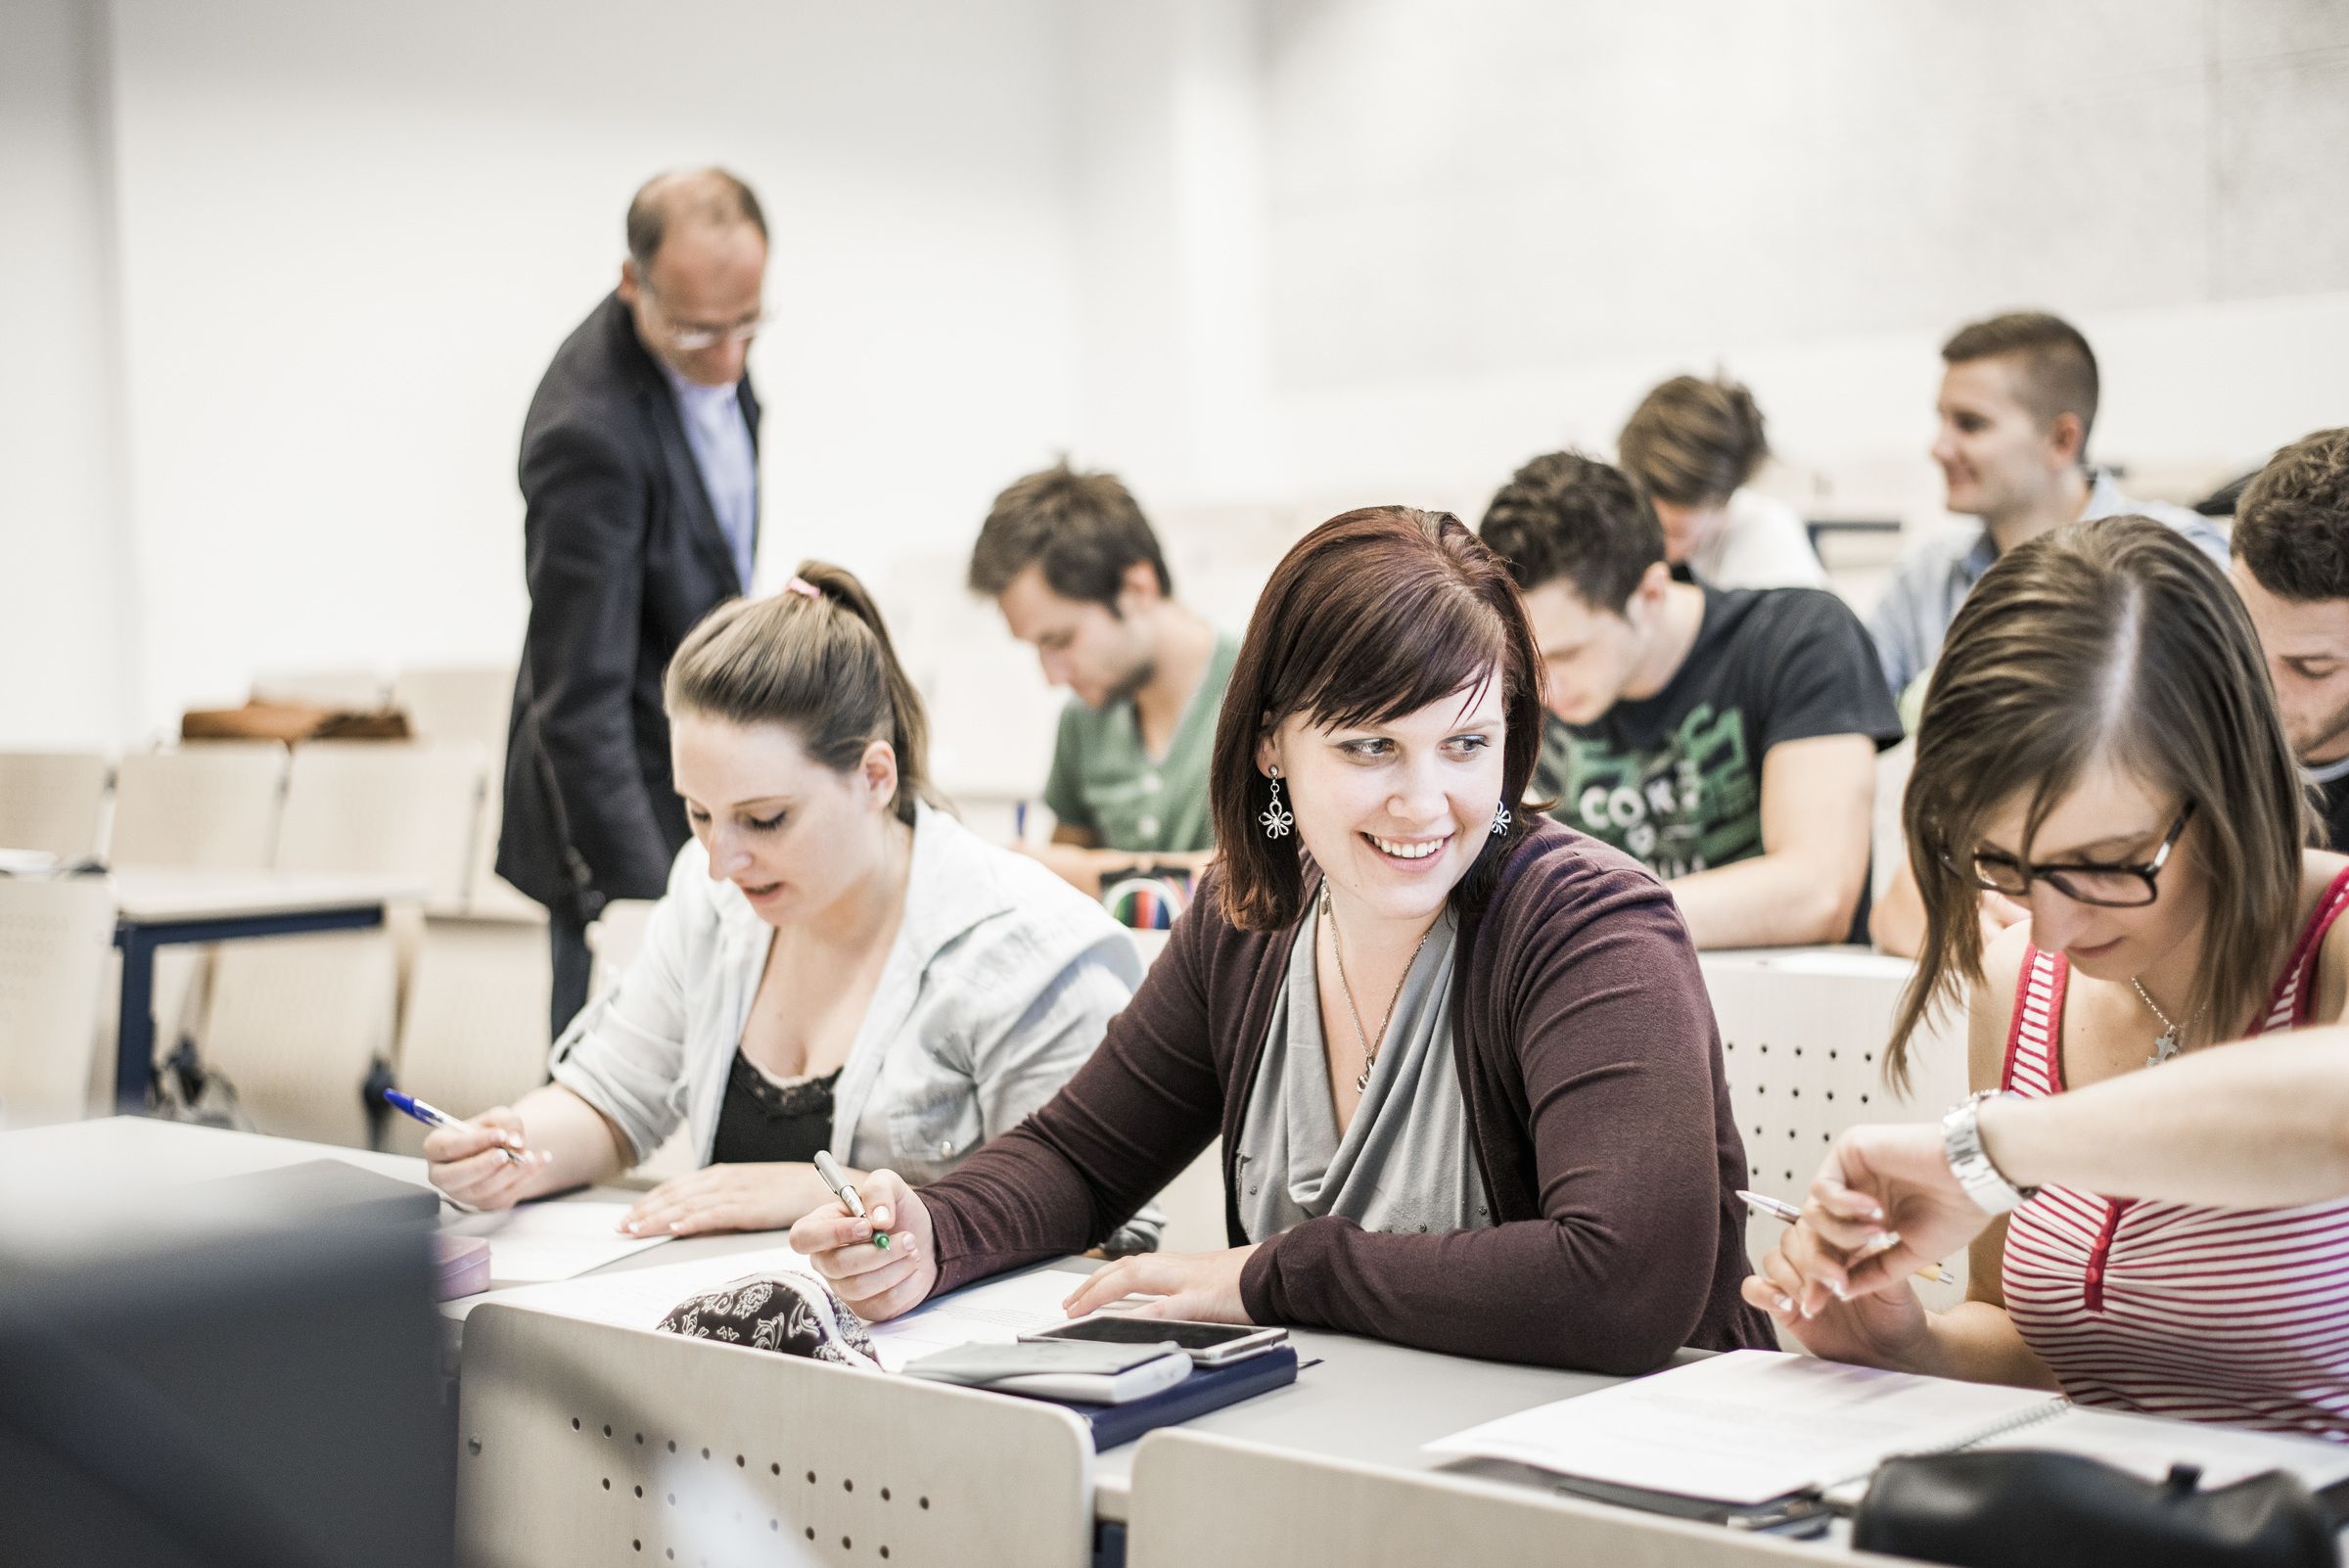 Am Studienbefähigungslehrgang werden die TeilnehmerInnen auf ein technisches, sozial- oder wirtschaftswissenschaftliches Studium vorbereitet. (© FH JOANNEUM / Marion Luttenberger)